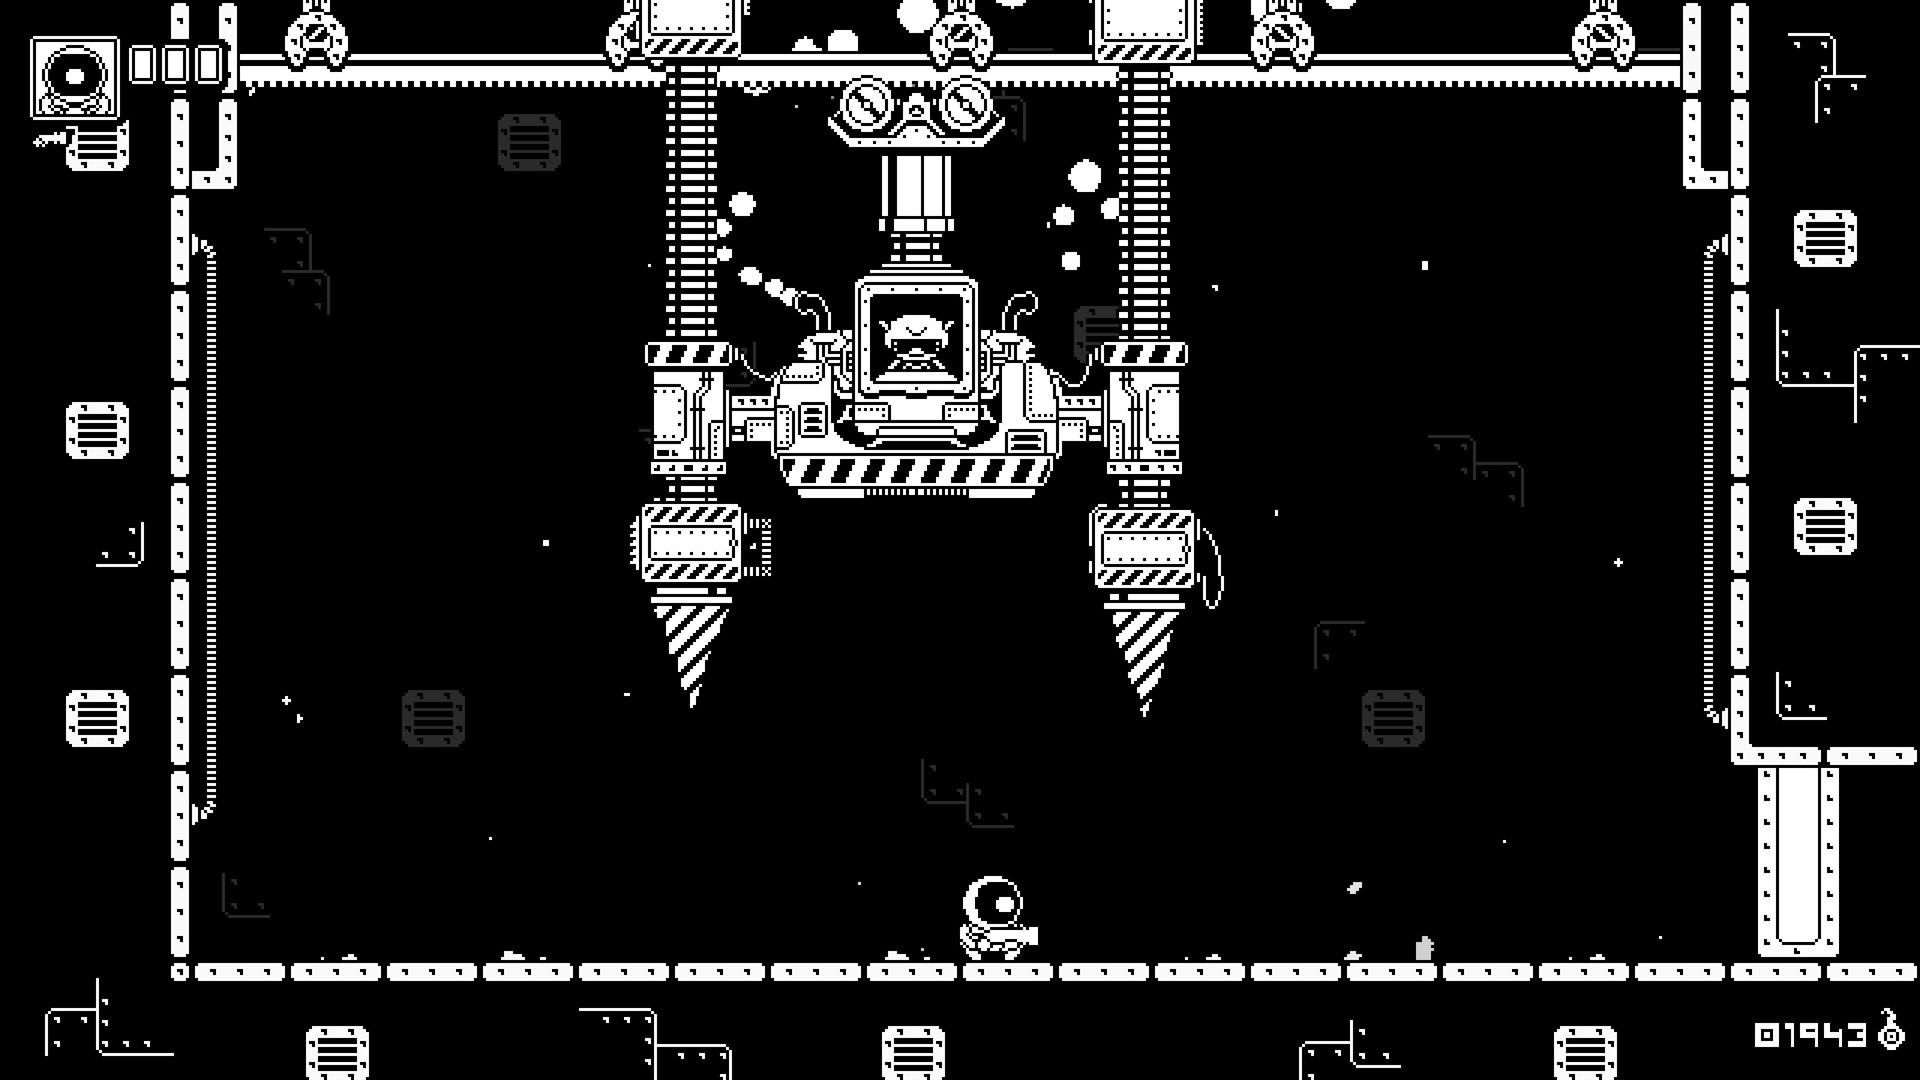 Astronite screenshot game